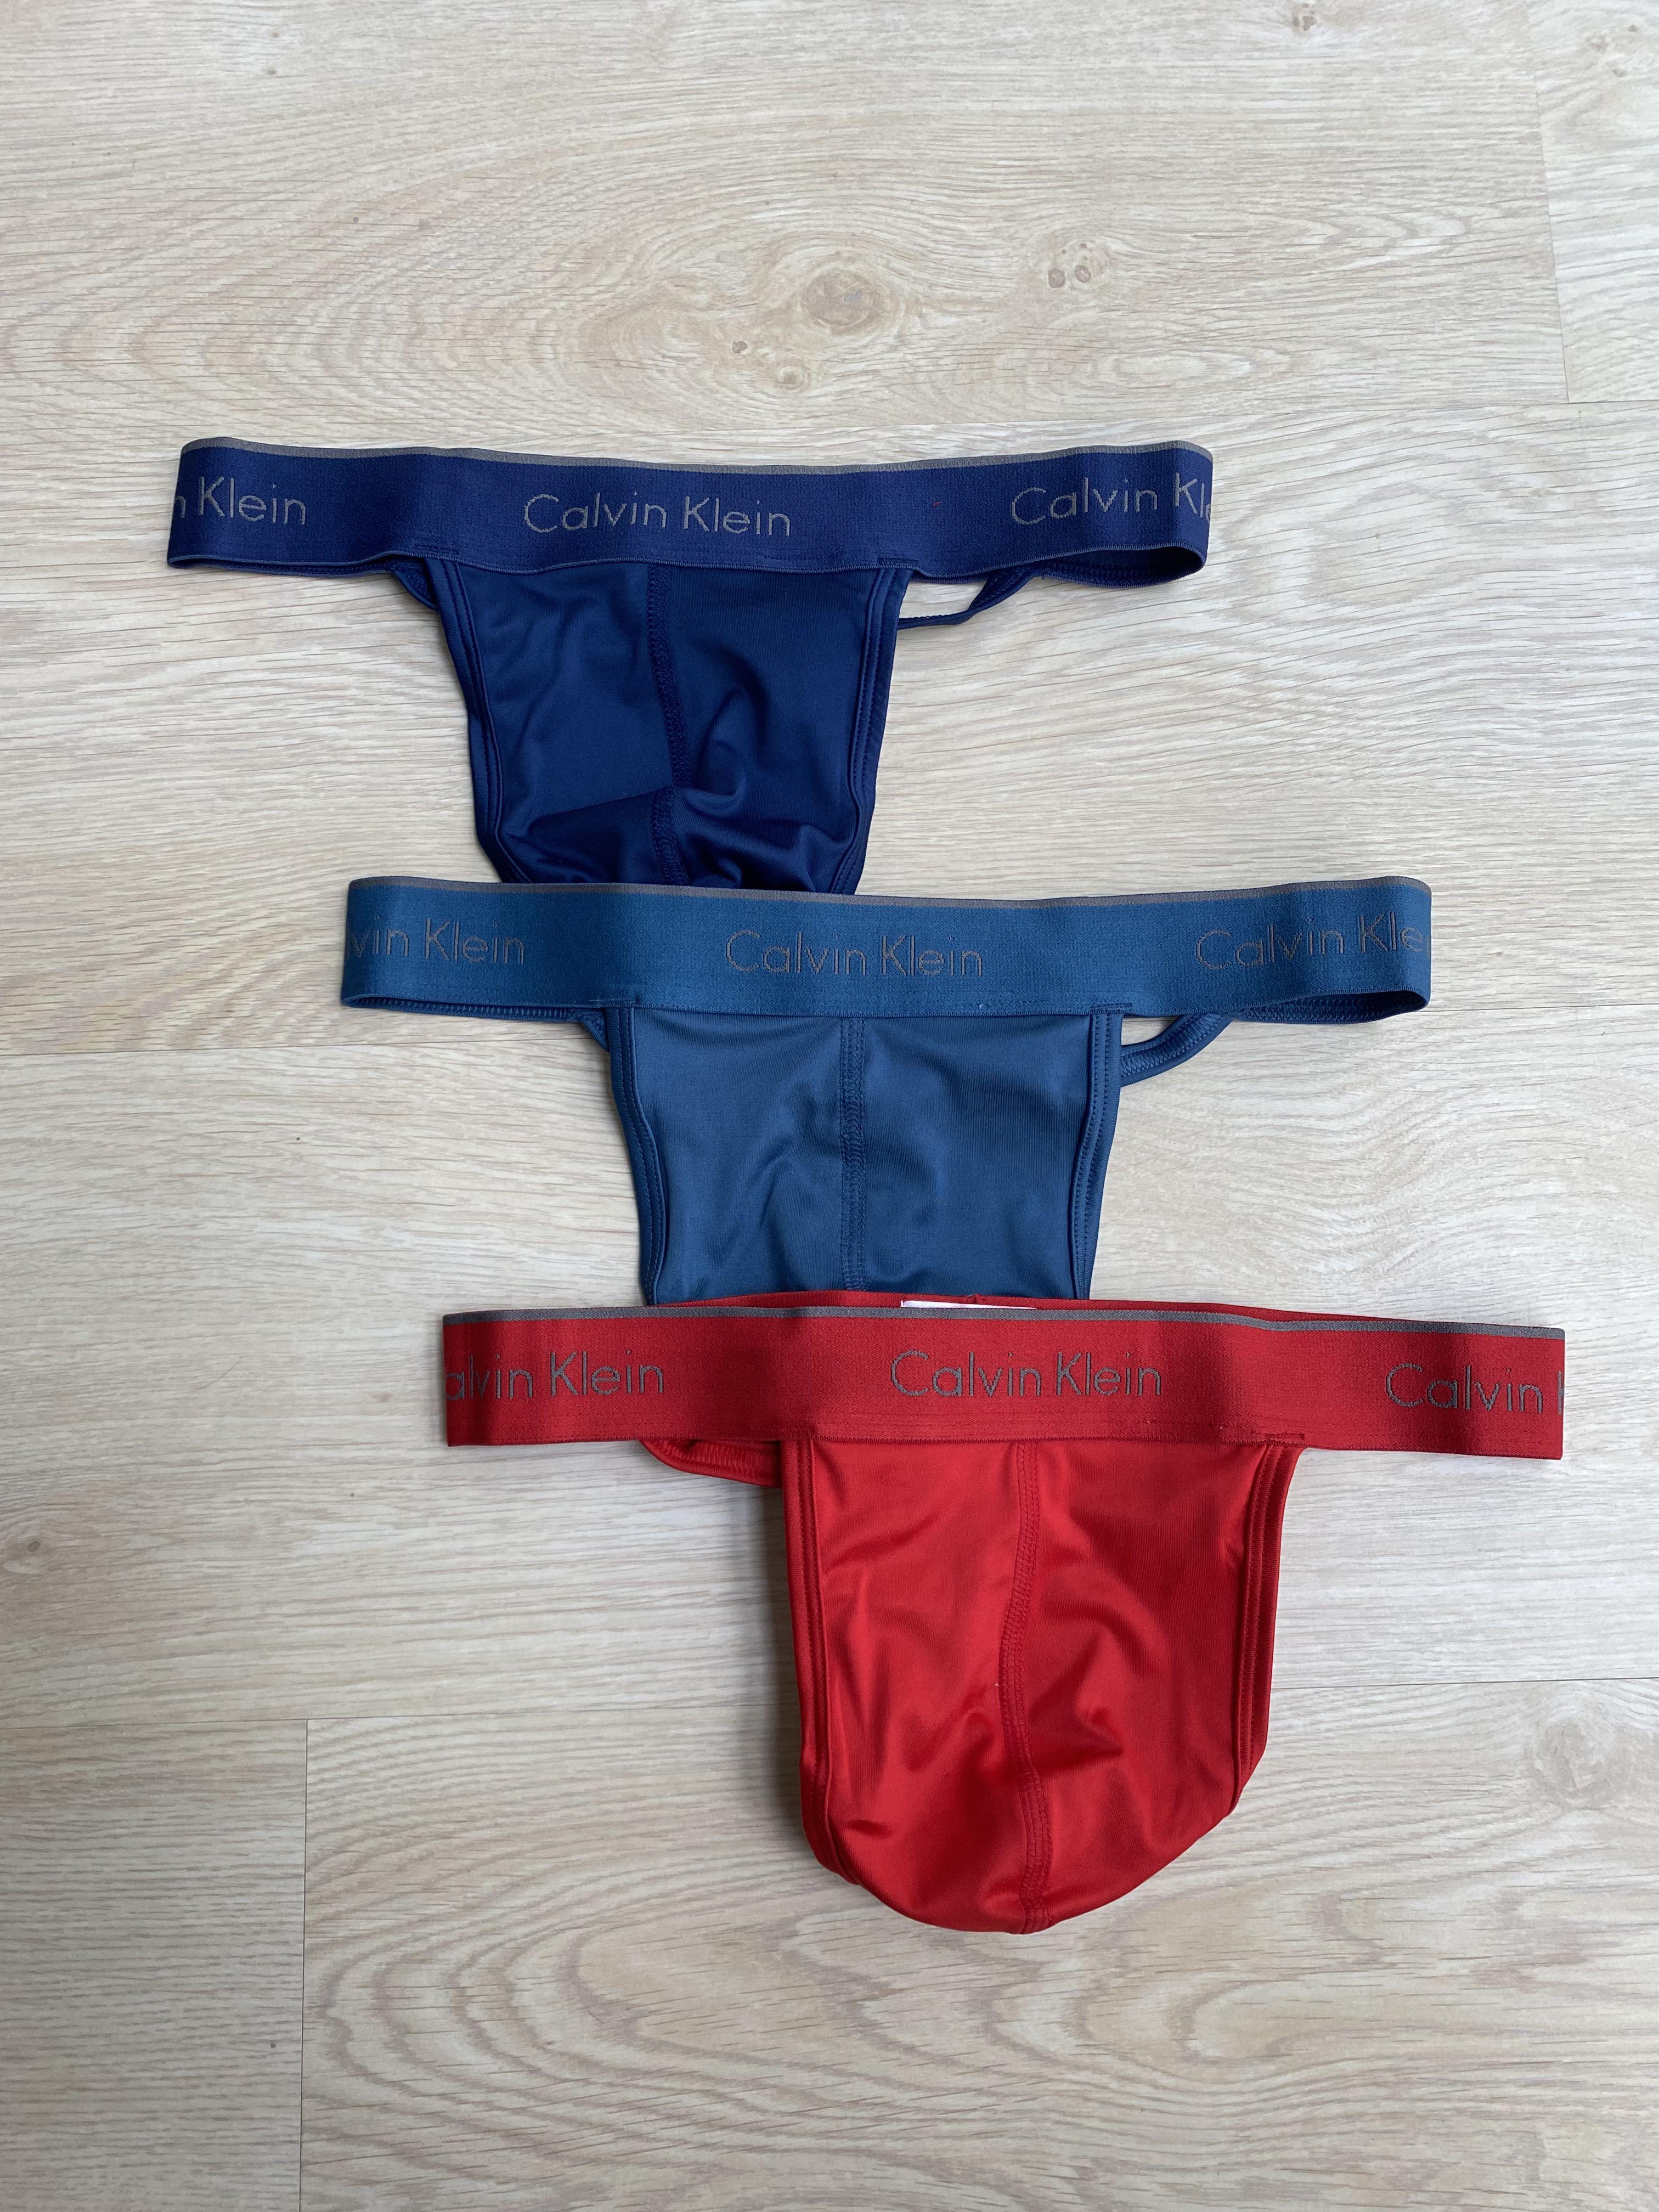 M) Calvin Klein Microfiber Stretch Men Thong Men Underwear, Men's Fashion,  Bottoms, New Underwear on Carousell